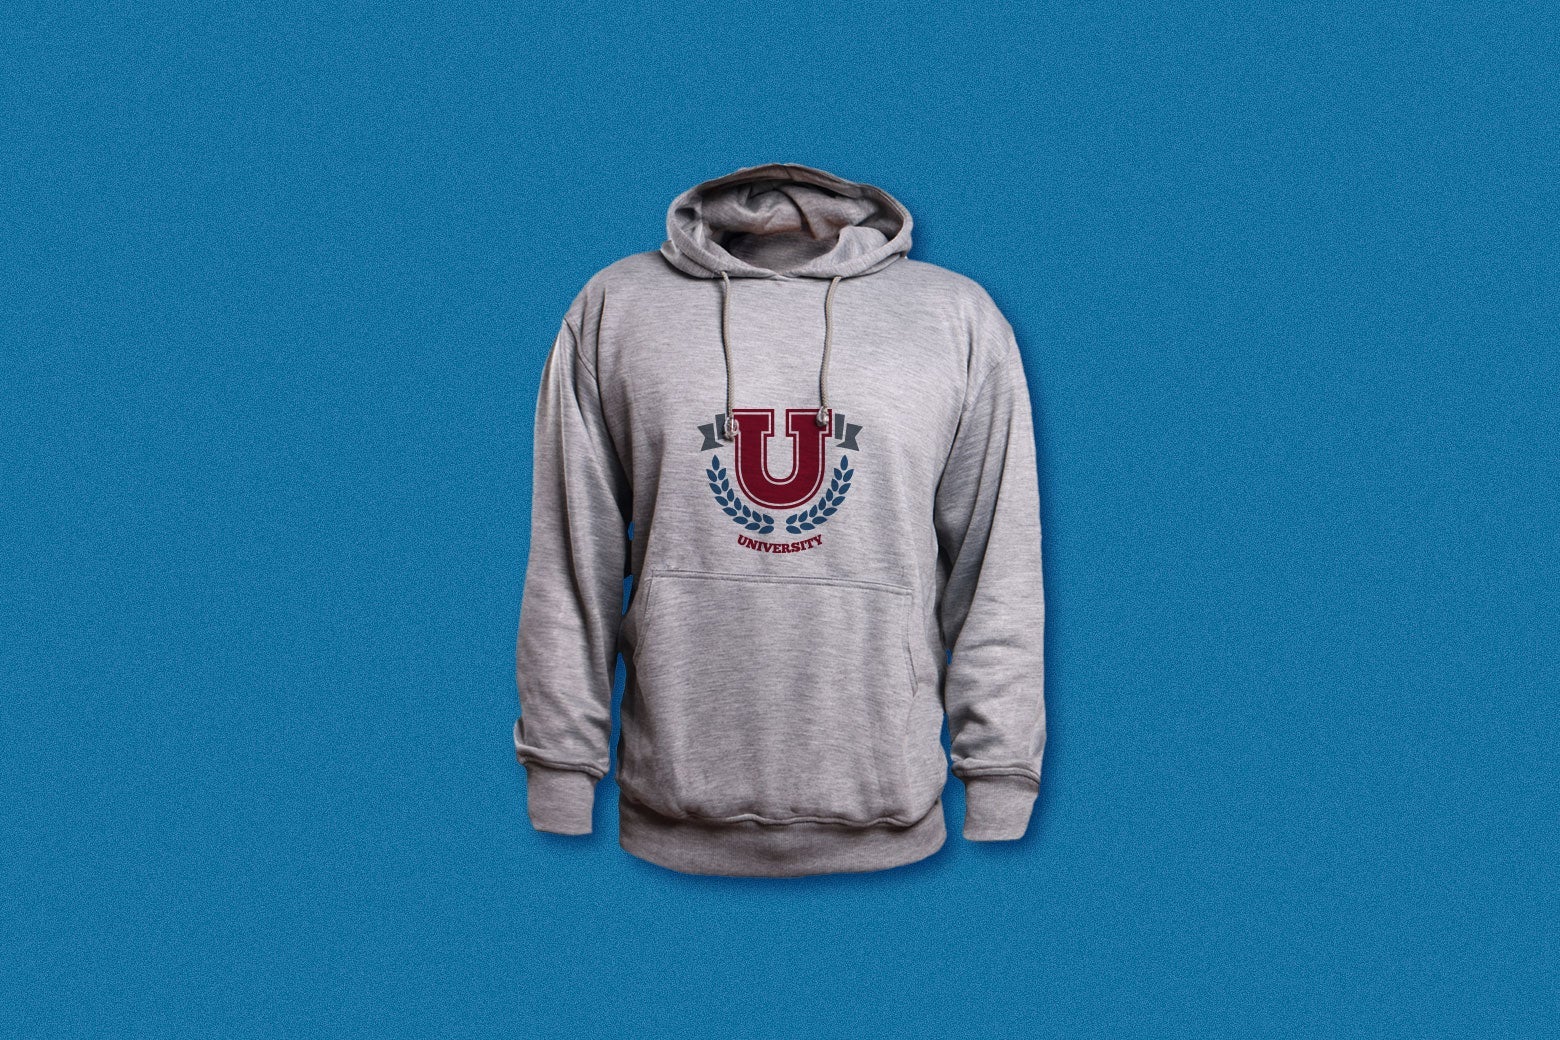 A generic university-branded gray hoodie